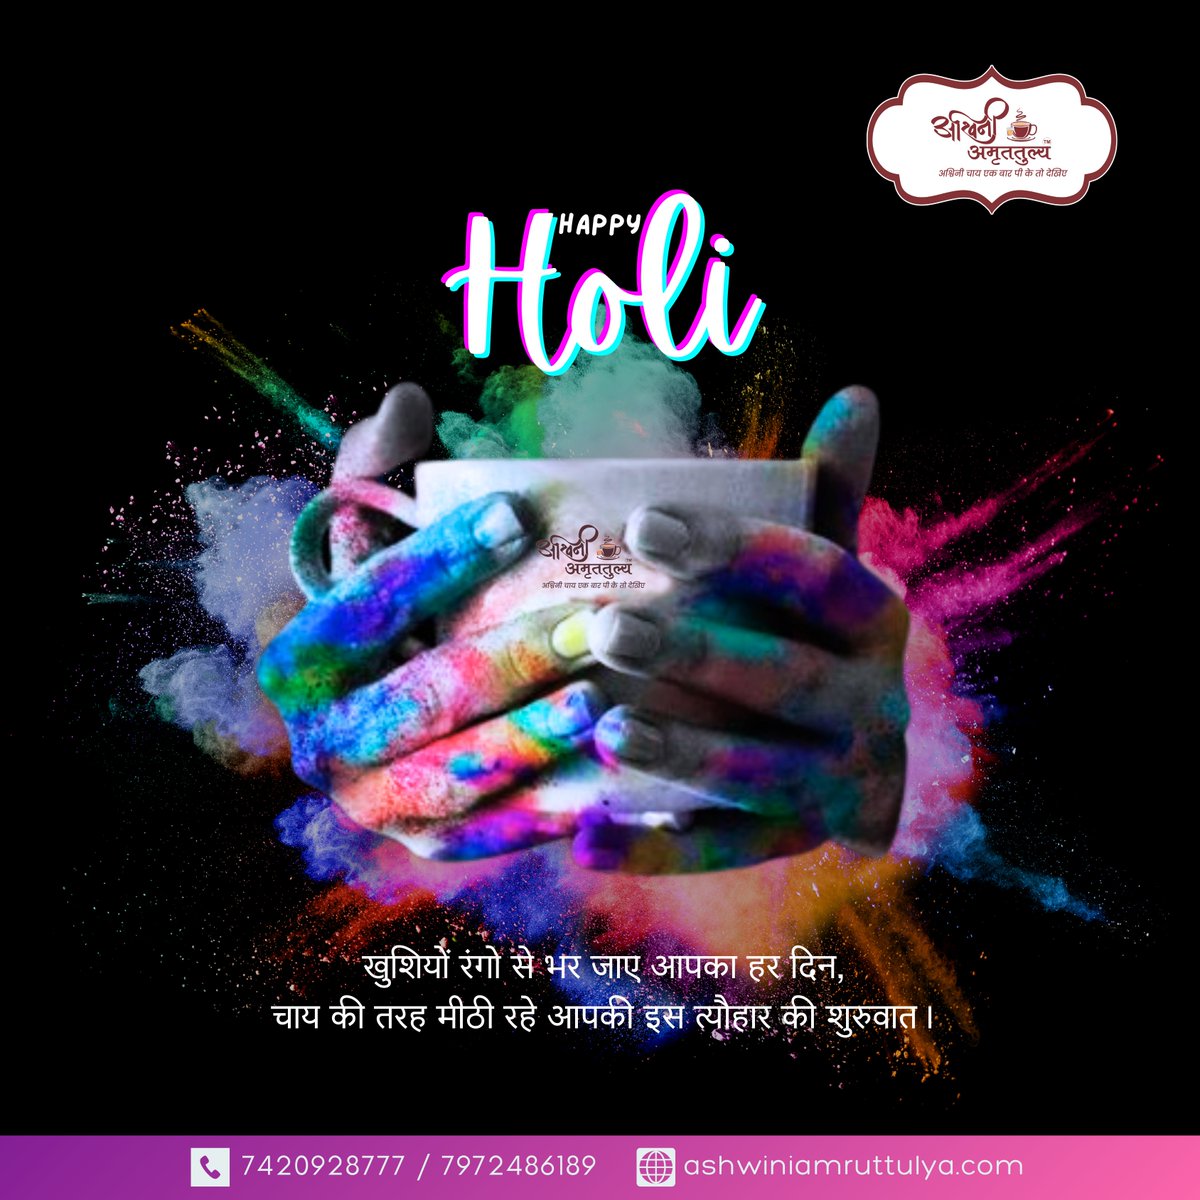 खुशियों रंगो से भर जाए आपका हर दिन,
चाय की तरह मीठी रहे आपकी इस त्यौहार की शुरुवात।
Happy Holi 🌈☕

#ashwiniamruttulya #happyholi #holipost #holi2024  #businessfranchise #festivalofcolours #colours #teaandholi